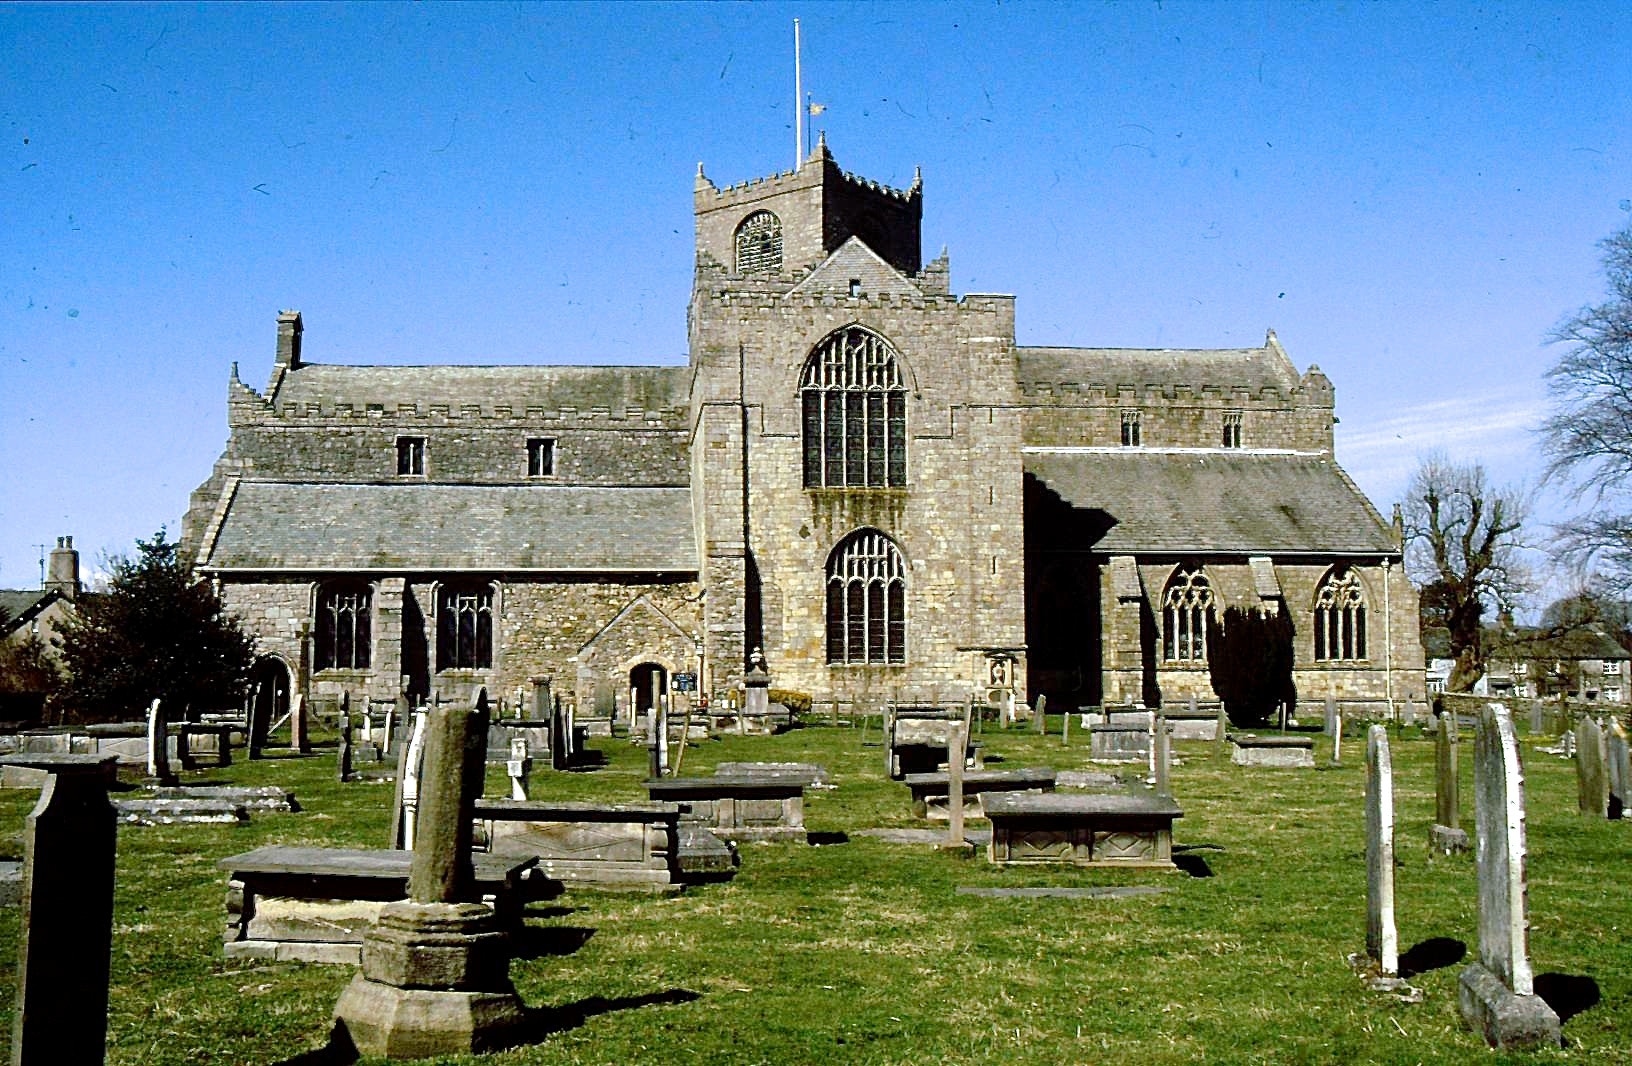 Photograph of Cartmel Priory, Cumbria, England